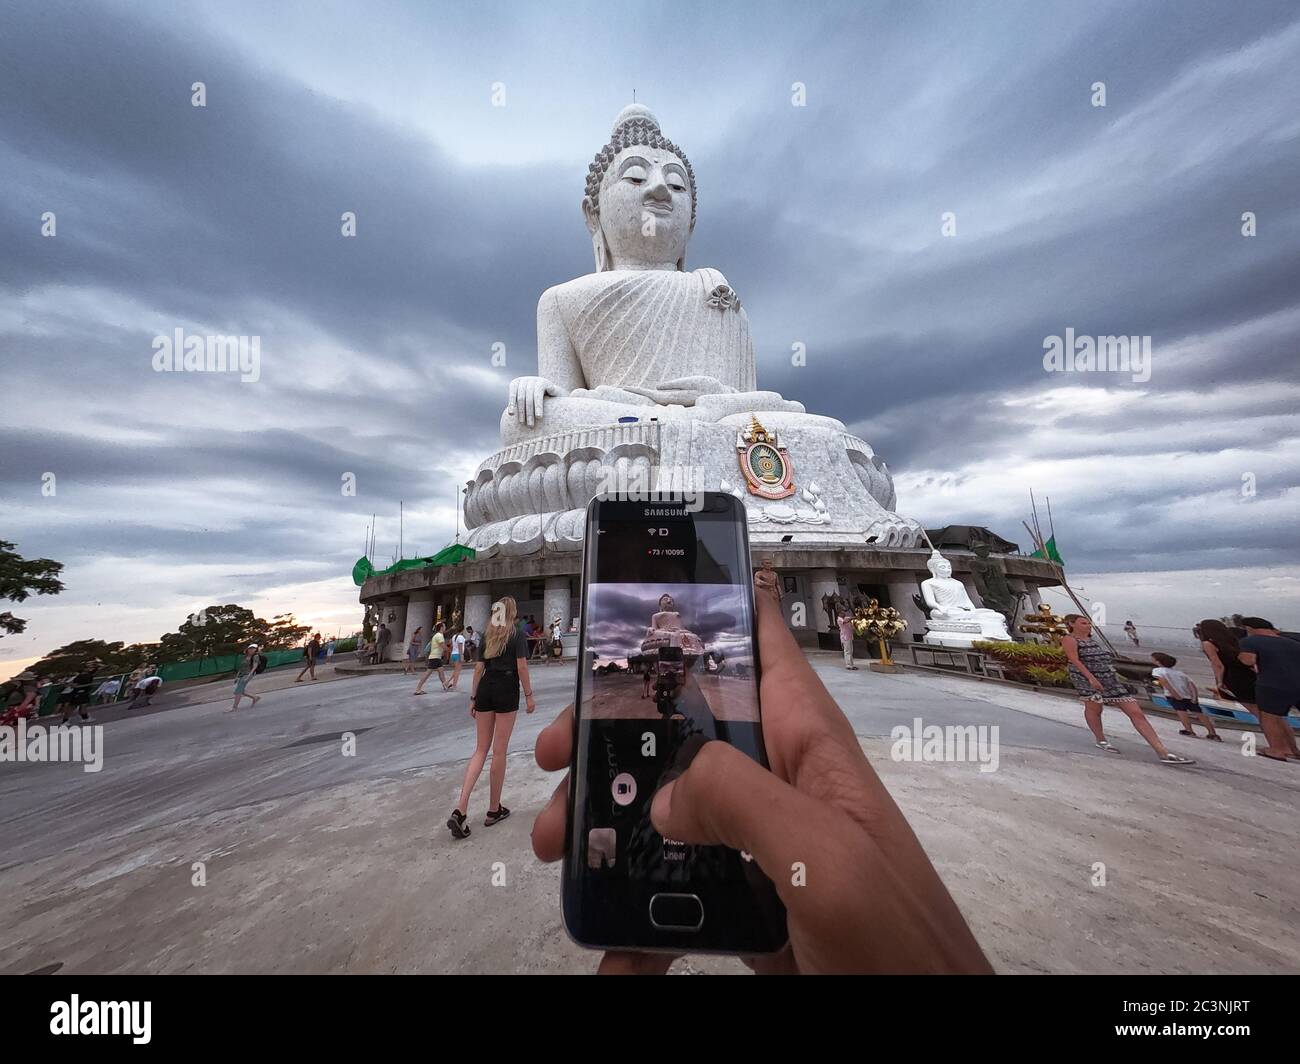 Foto della statua del Grande Buddha - statua del Buddha di Maravija sulla collina di Nakkerd, Phuket, Thailandia 20/11/2019 Foto Stock